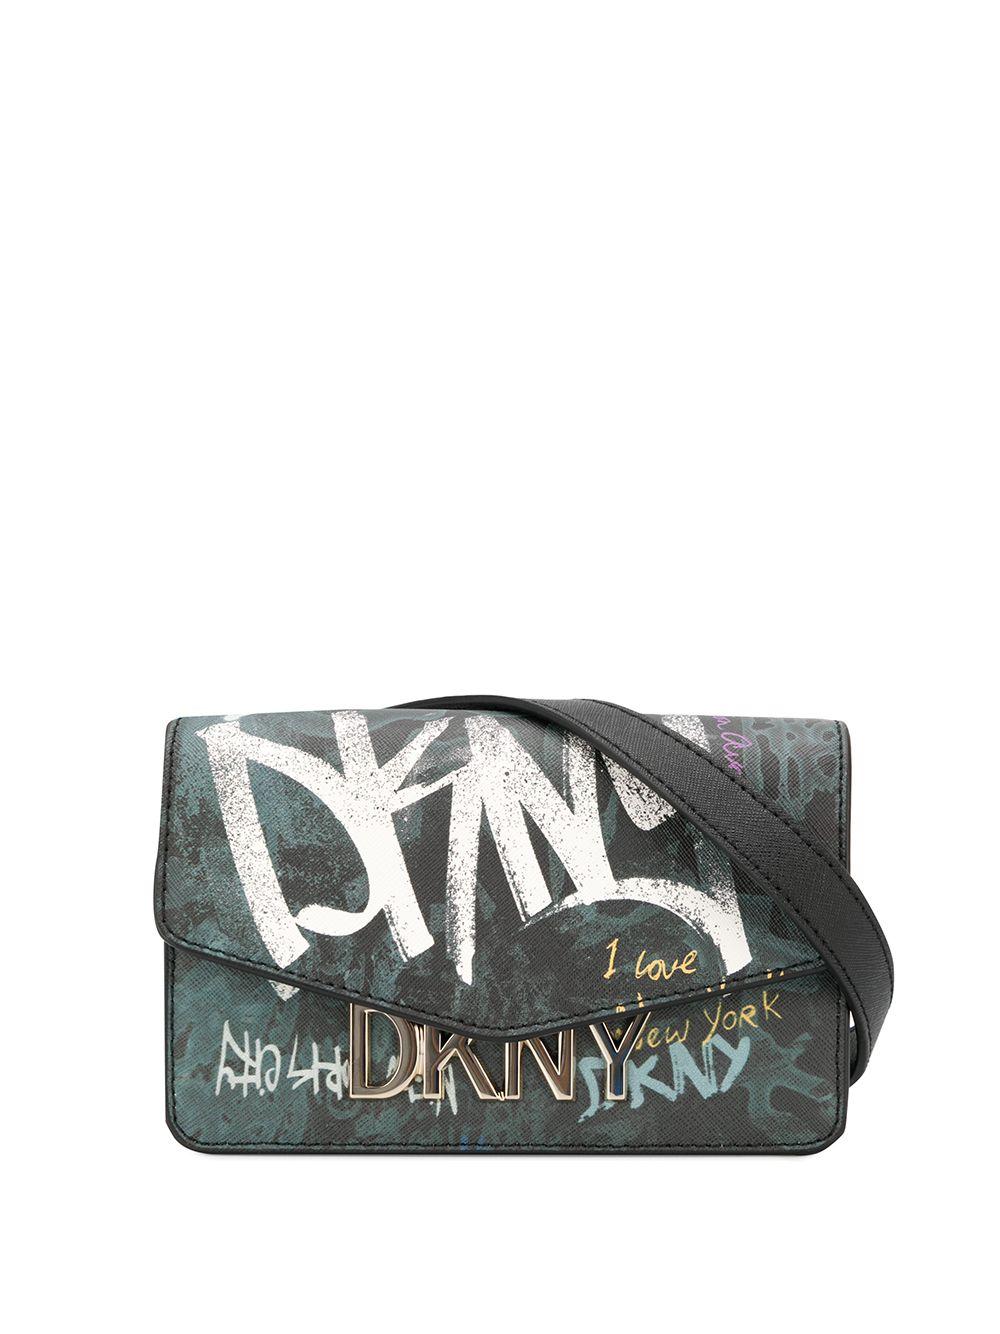 DKNY Graffiti Crossbody Bags